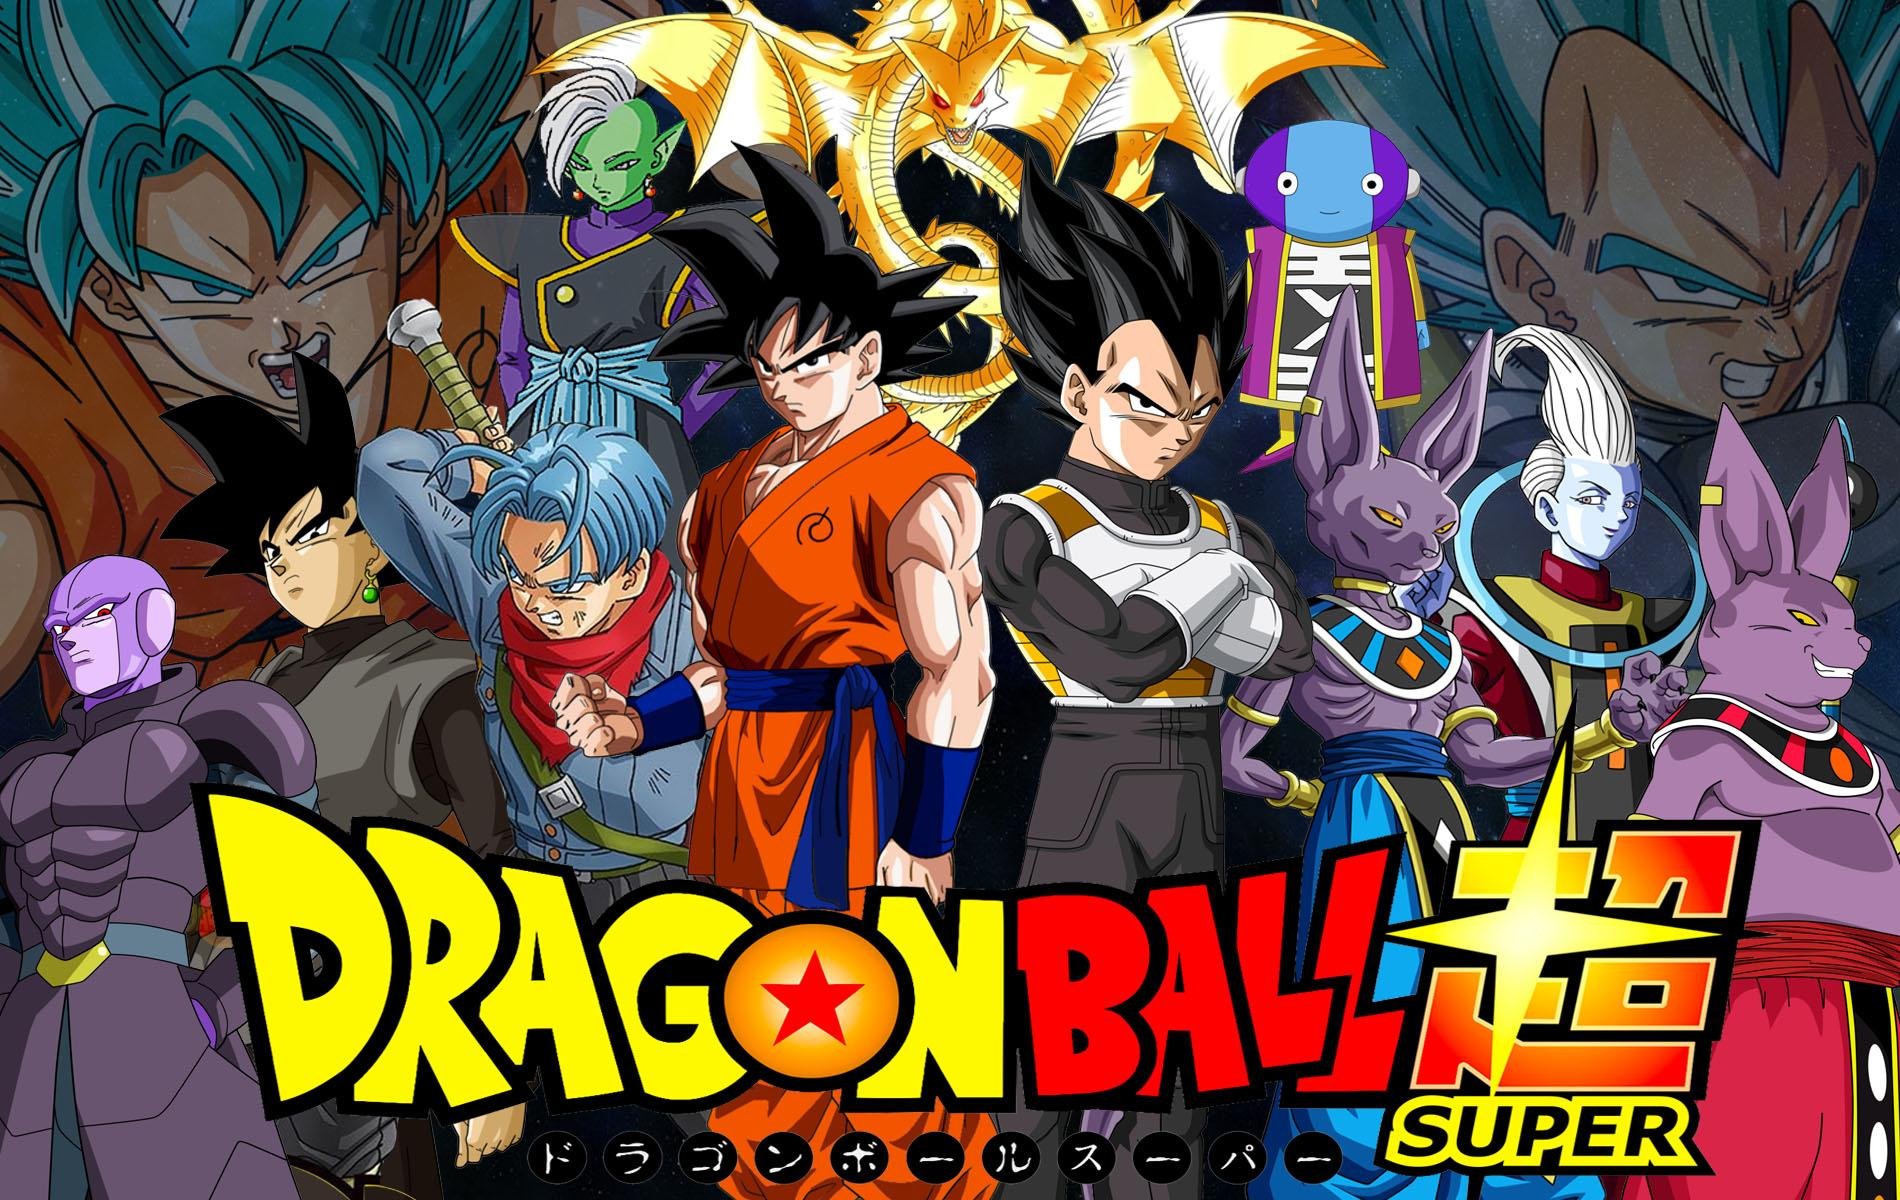 Começa a dublagem oficial da série Dragon Ball Super!